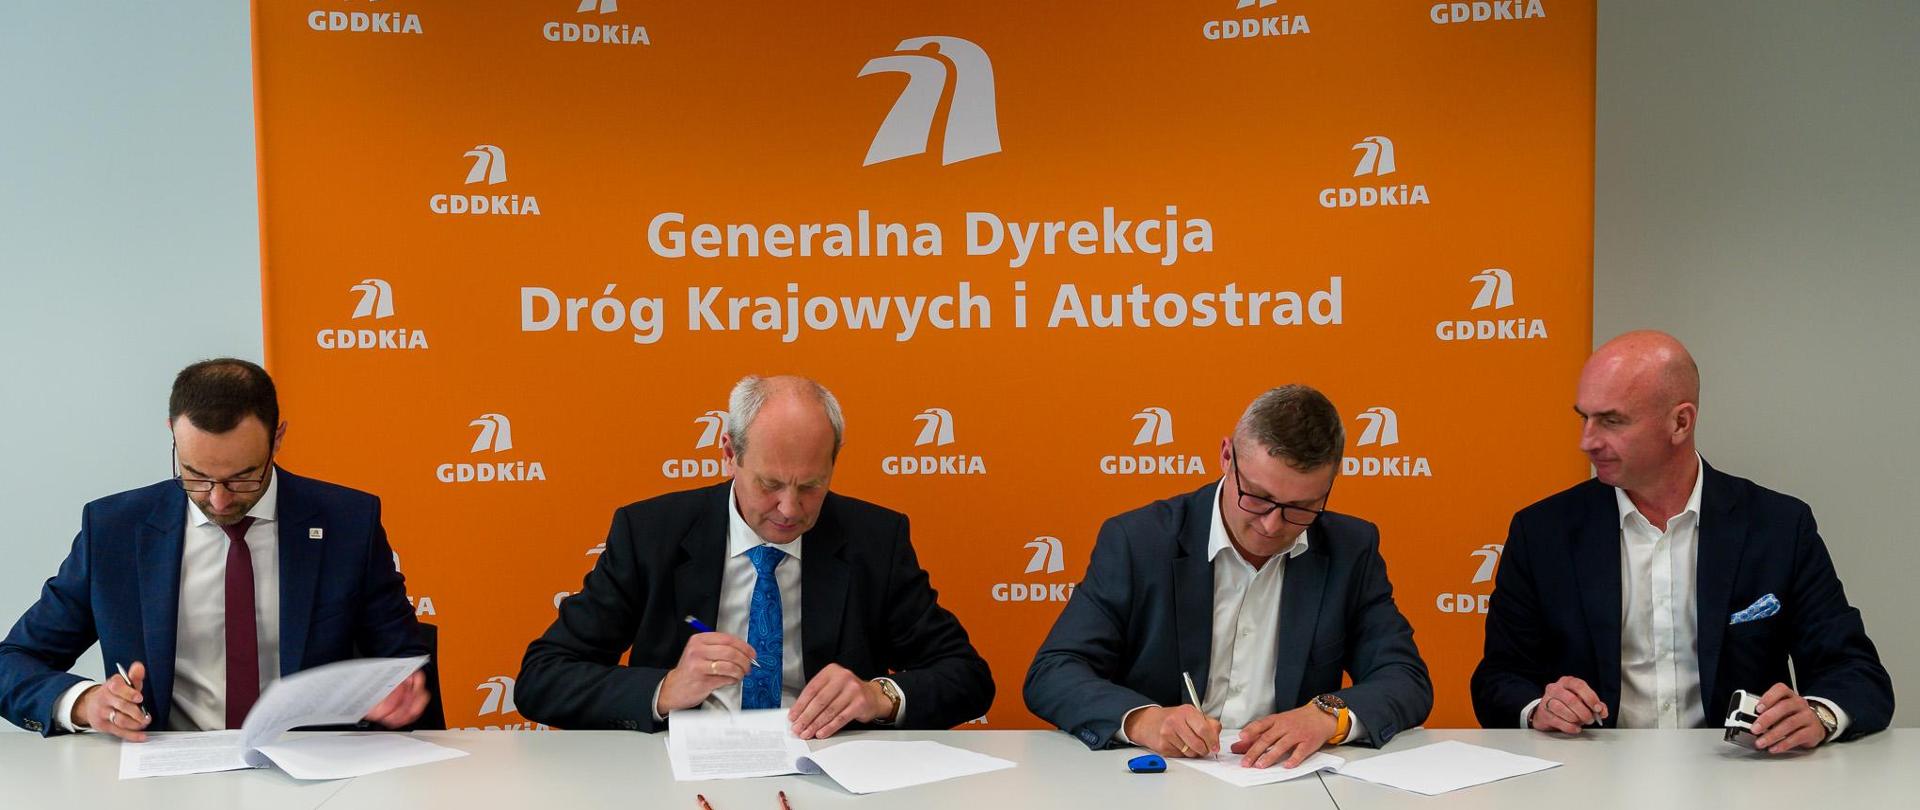 Moment podpisania jednego z 18 aneksów waloryzacyjnych. 4 elegancko ubranych mężczyzn siedzących obok siebie podpisuje dokumenty. W tle pomarańczowa ścianka z logotypami i nazwą GDDKiA.